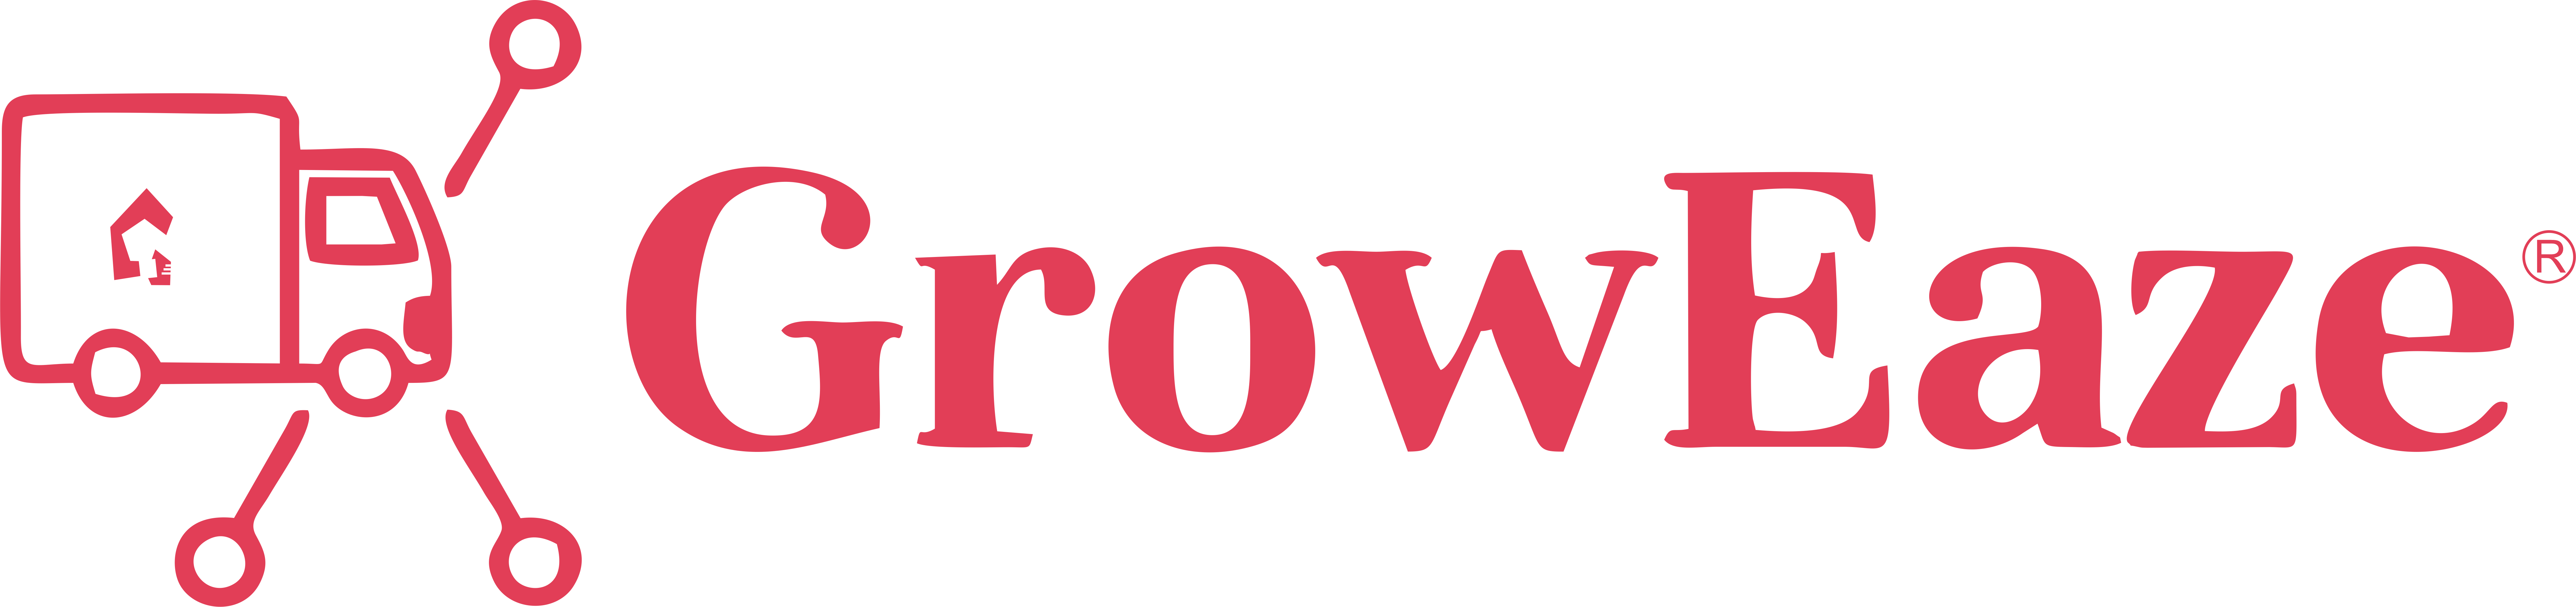 Groweaze logo with r